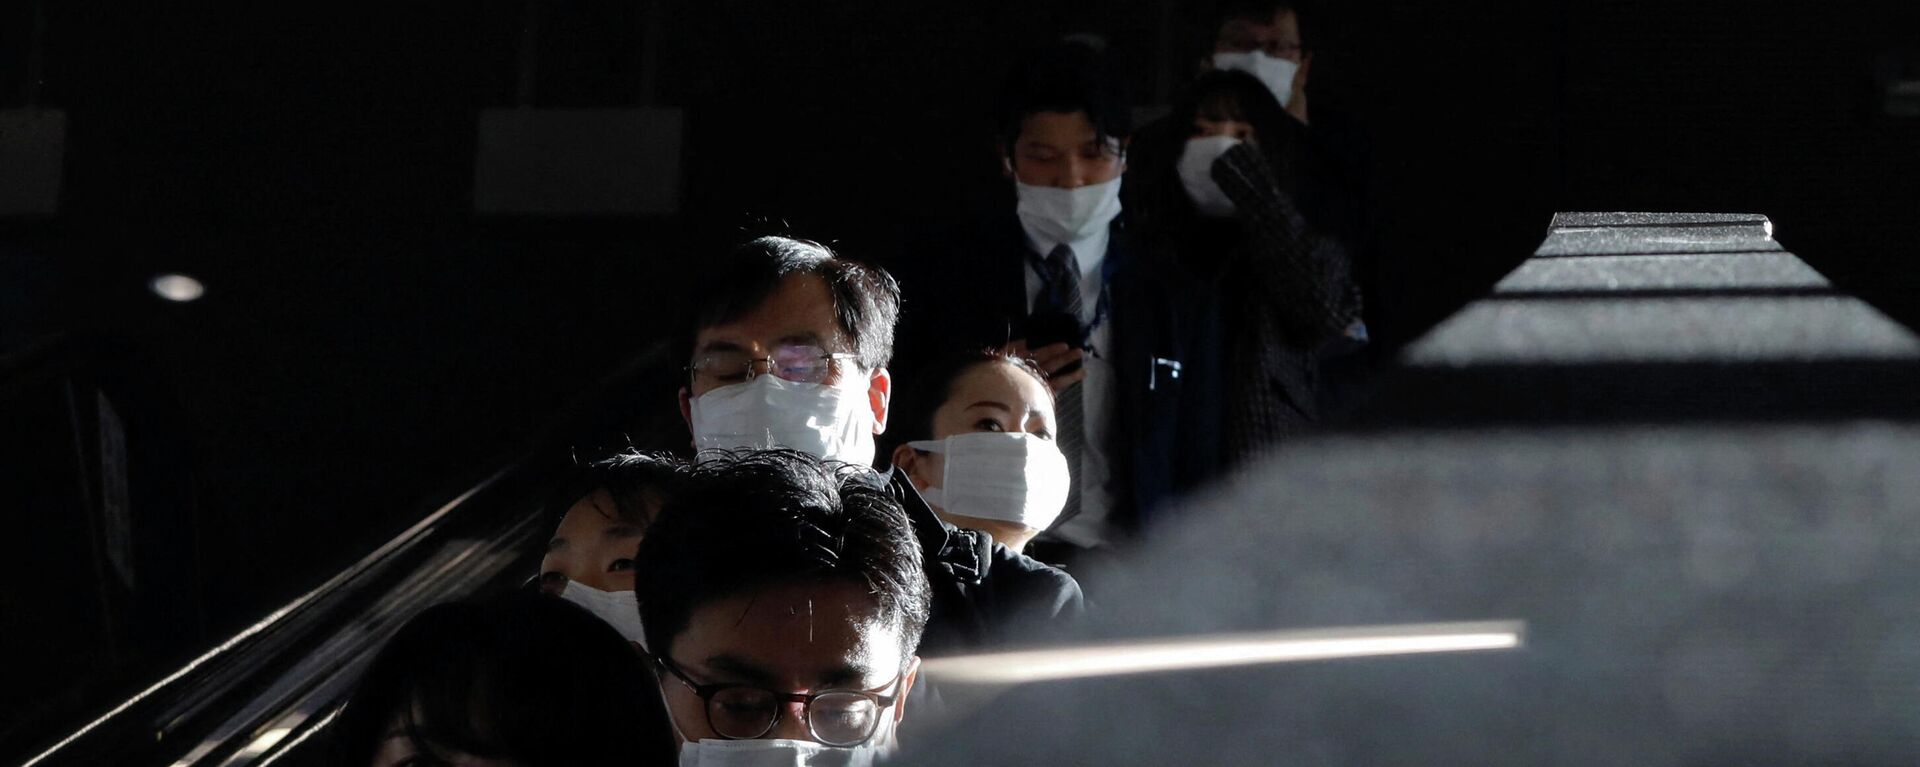 Unas personas con mascarillas durante el brote de coronavirus en Japón - Sputnik Mundo, 1920, 13.01.2022